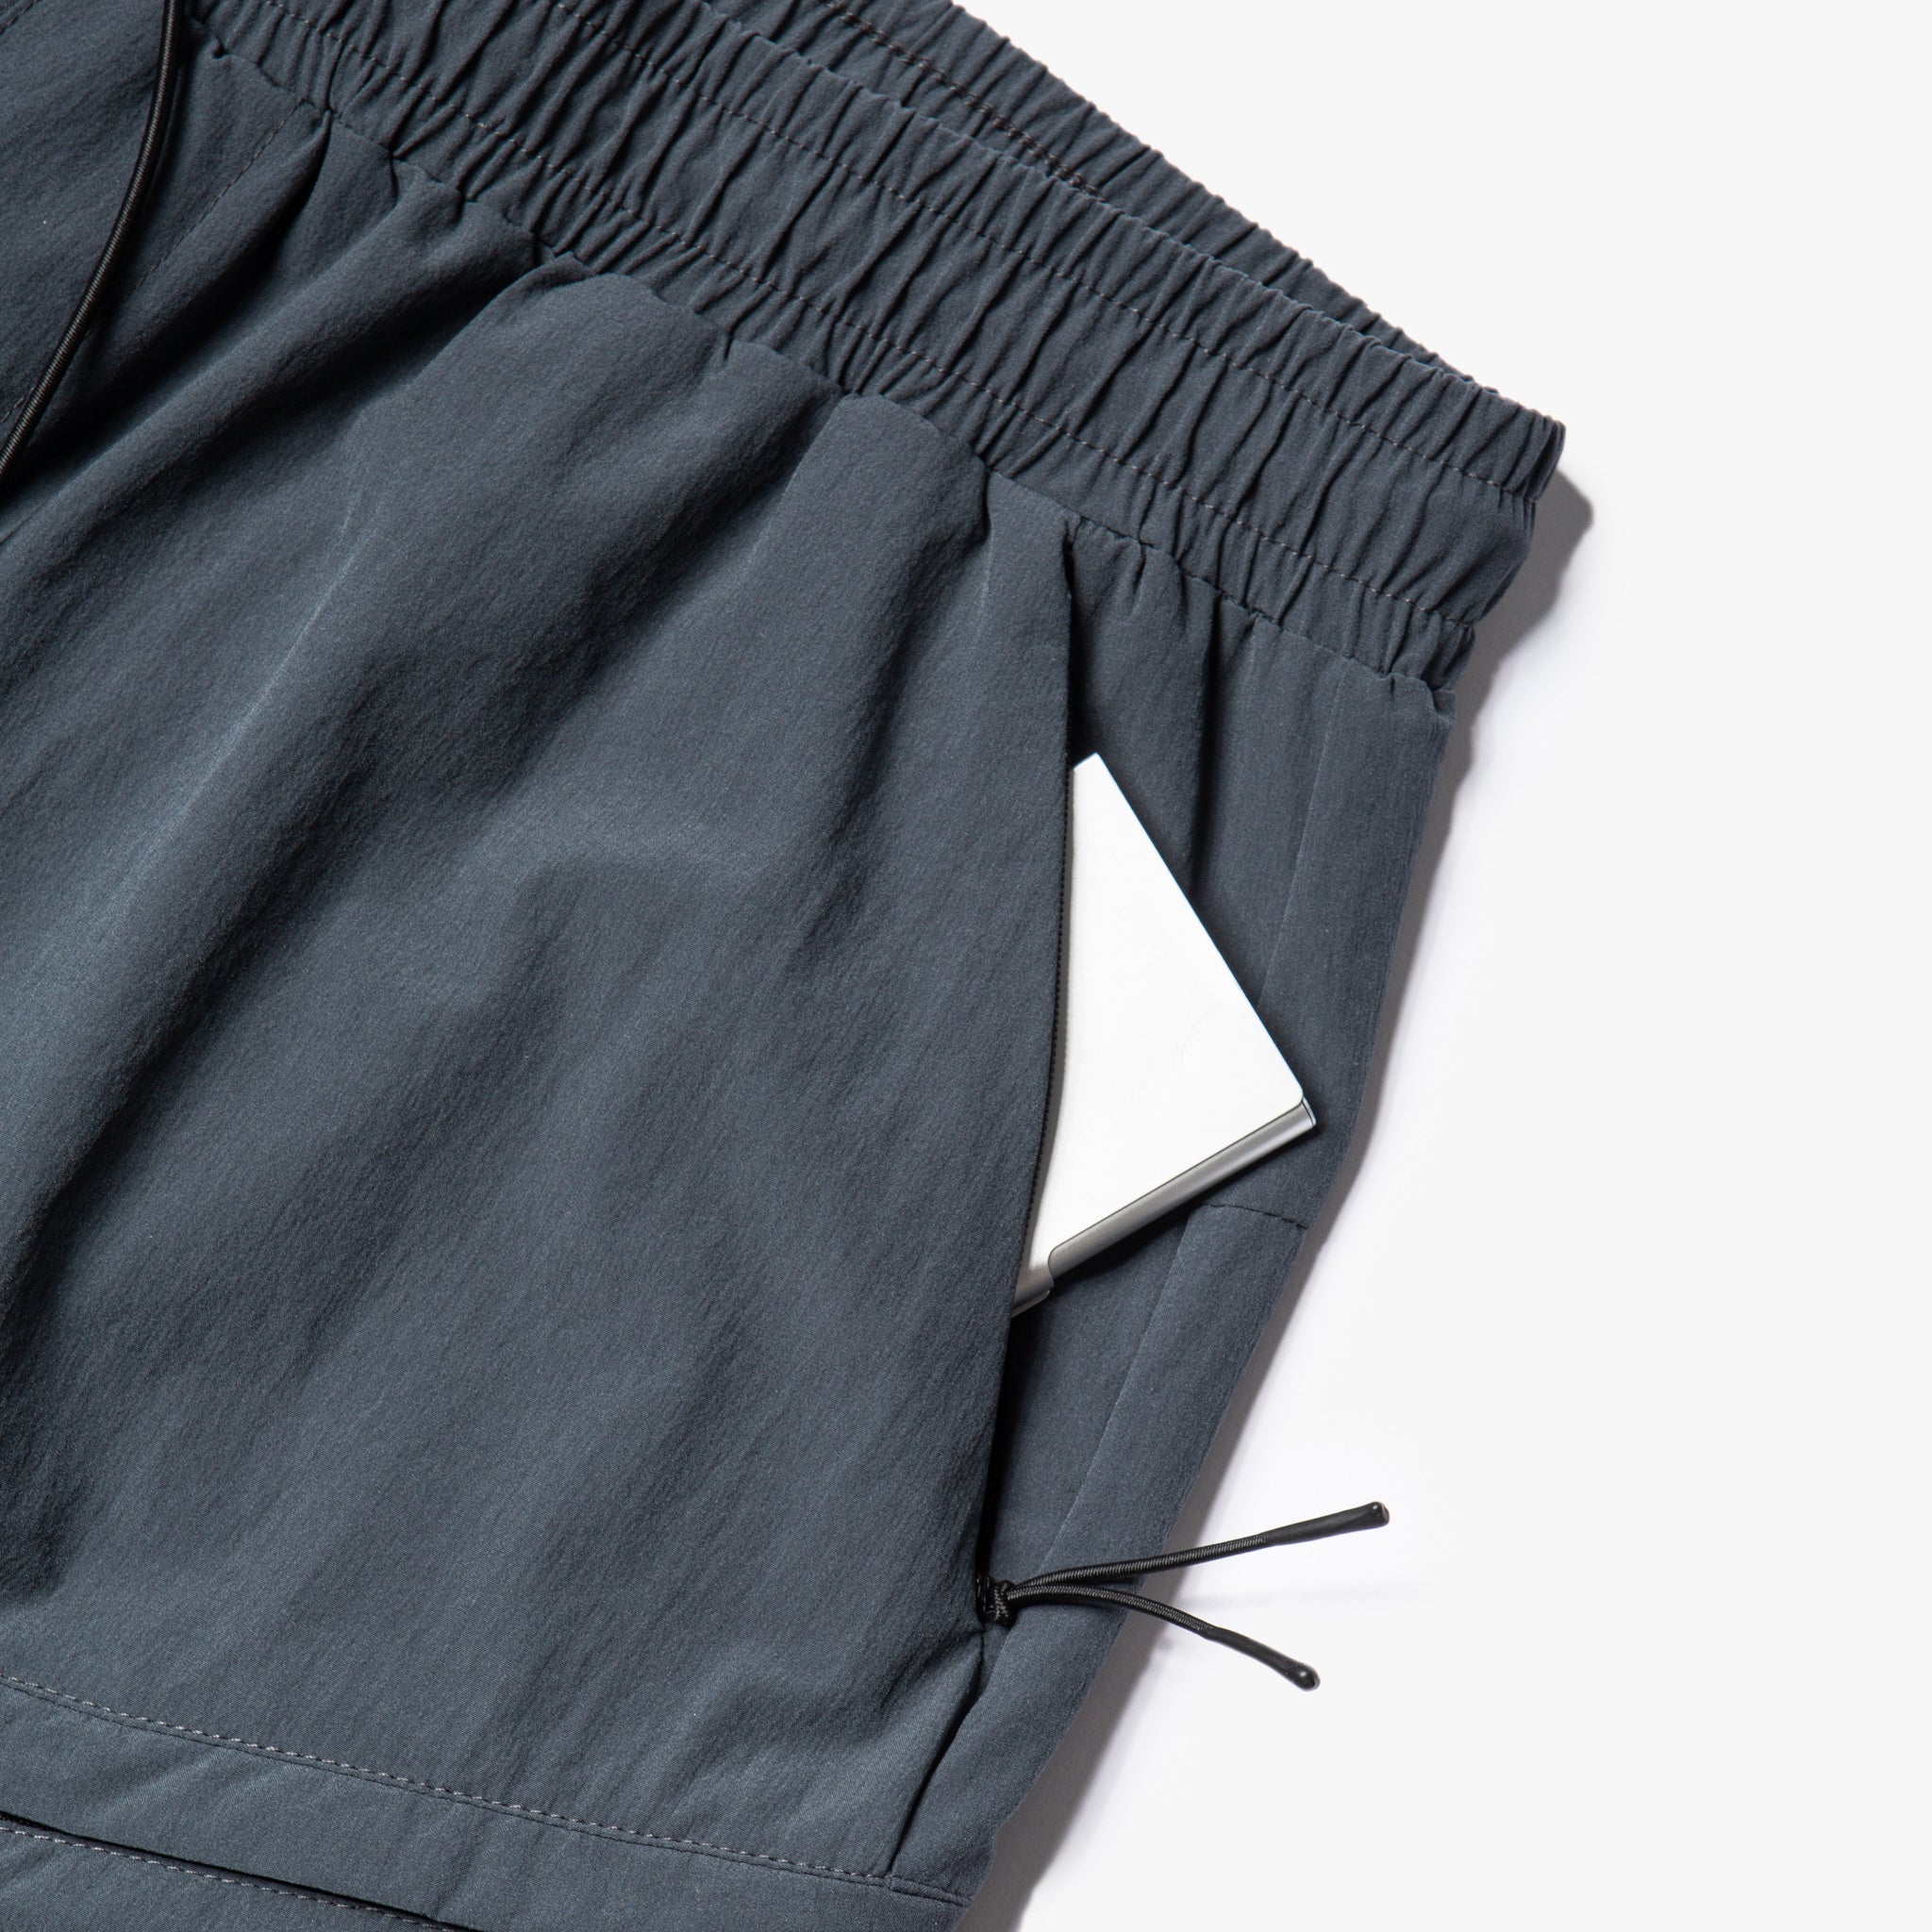 Clyde Tech Cargo Shorts (Shadow Grey)